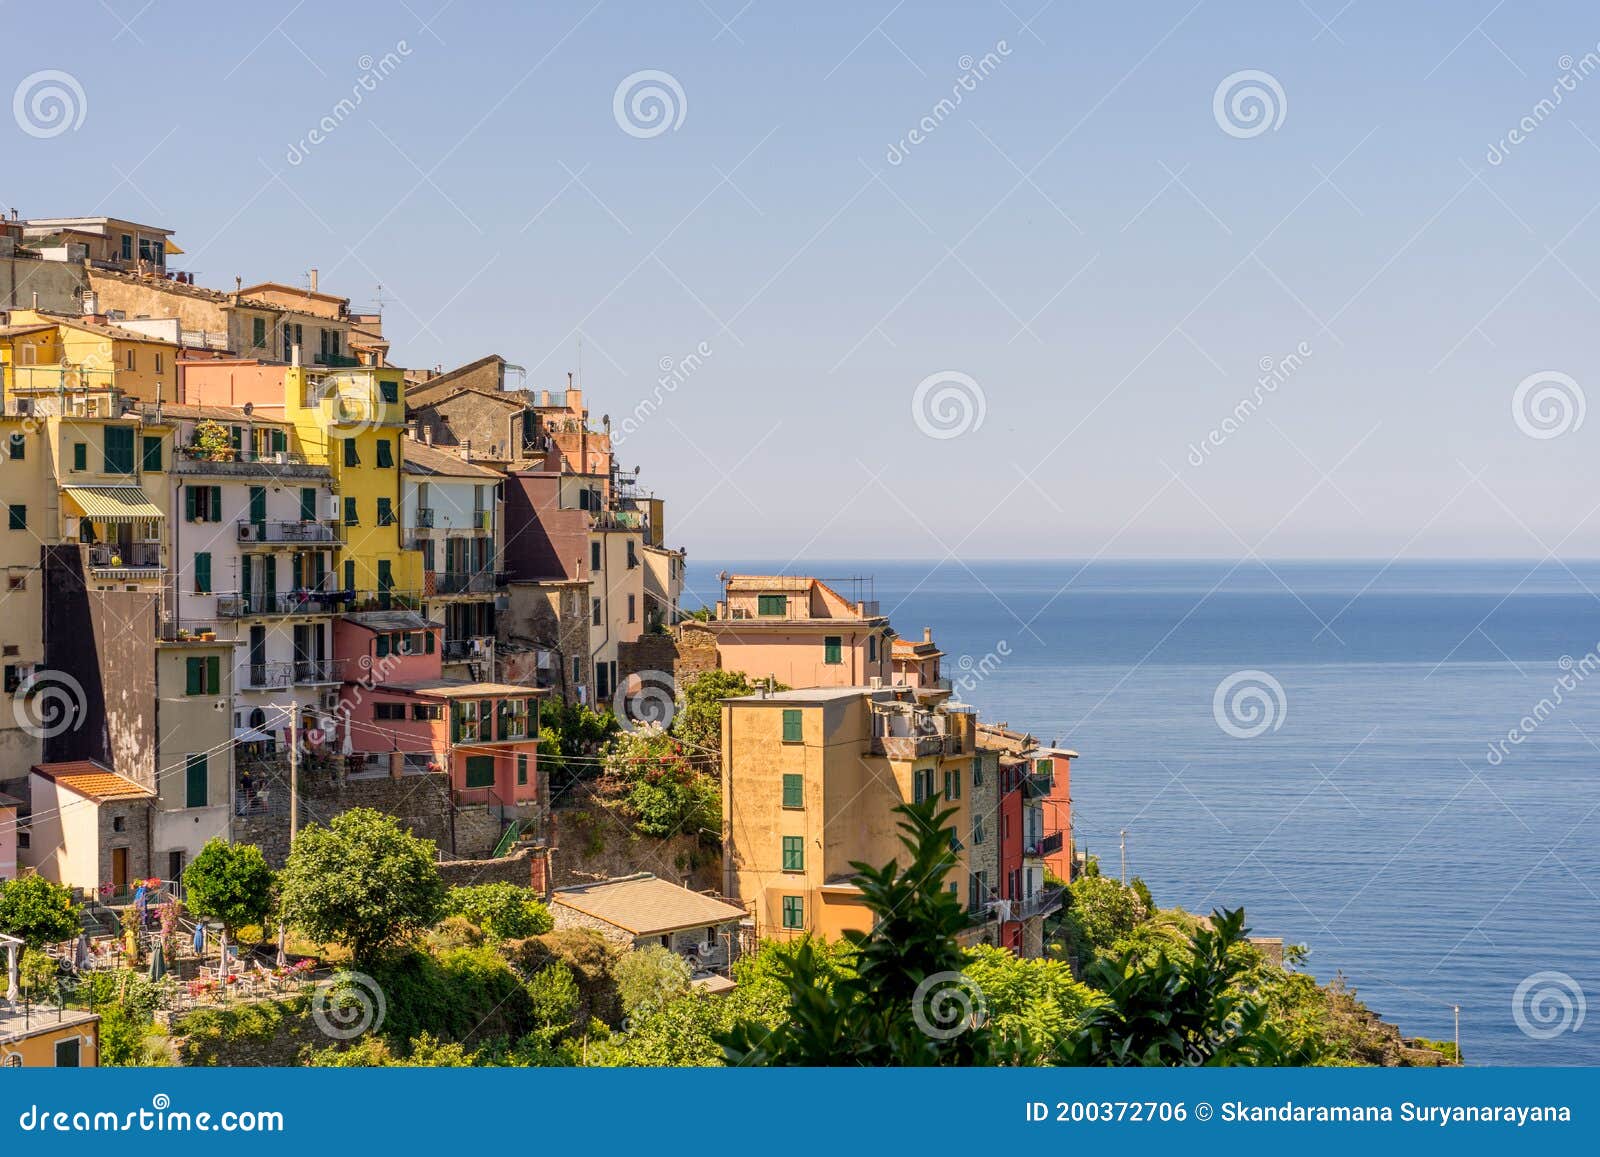 The Townscape and Cityscape of Corniglia, Cinque Terre, Italy Stock ...